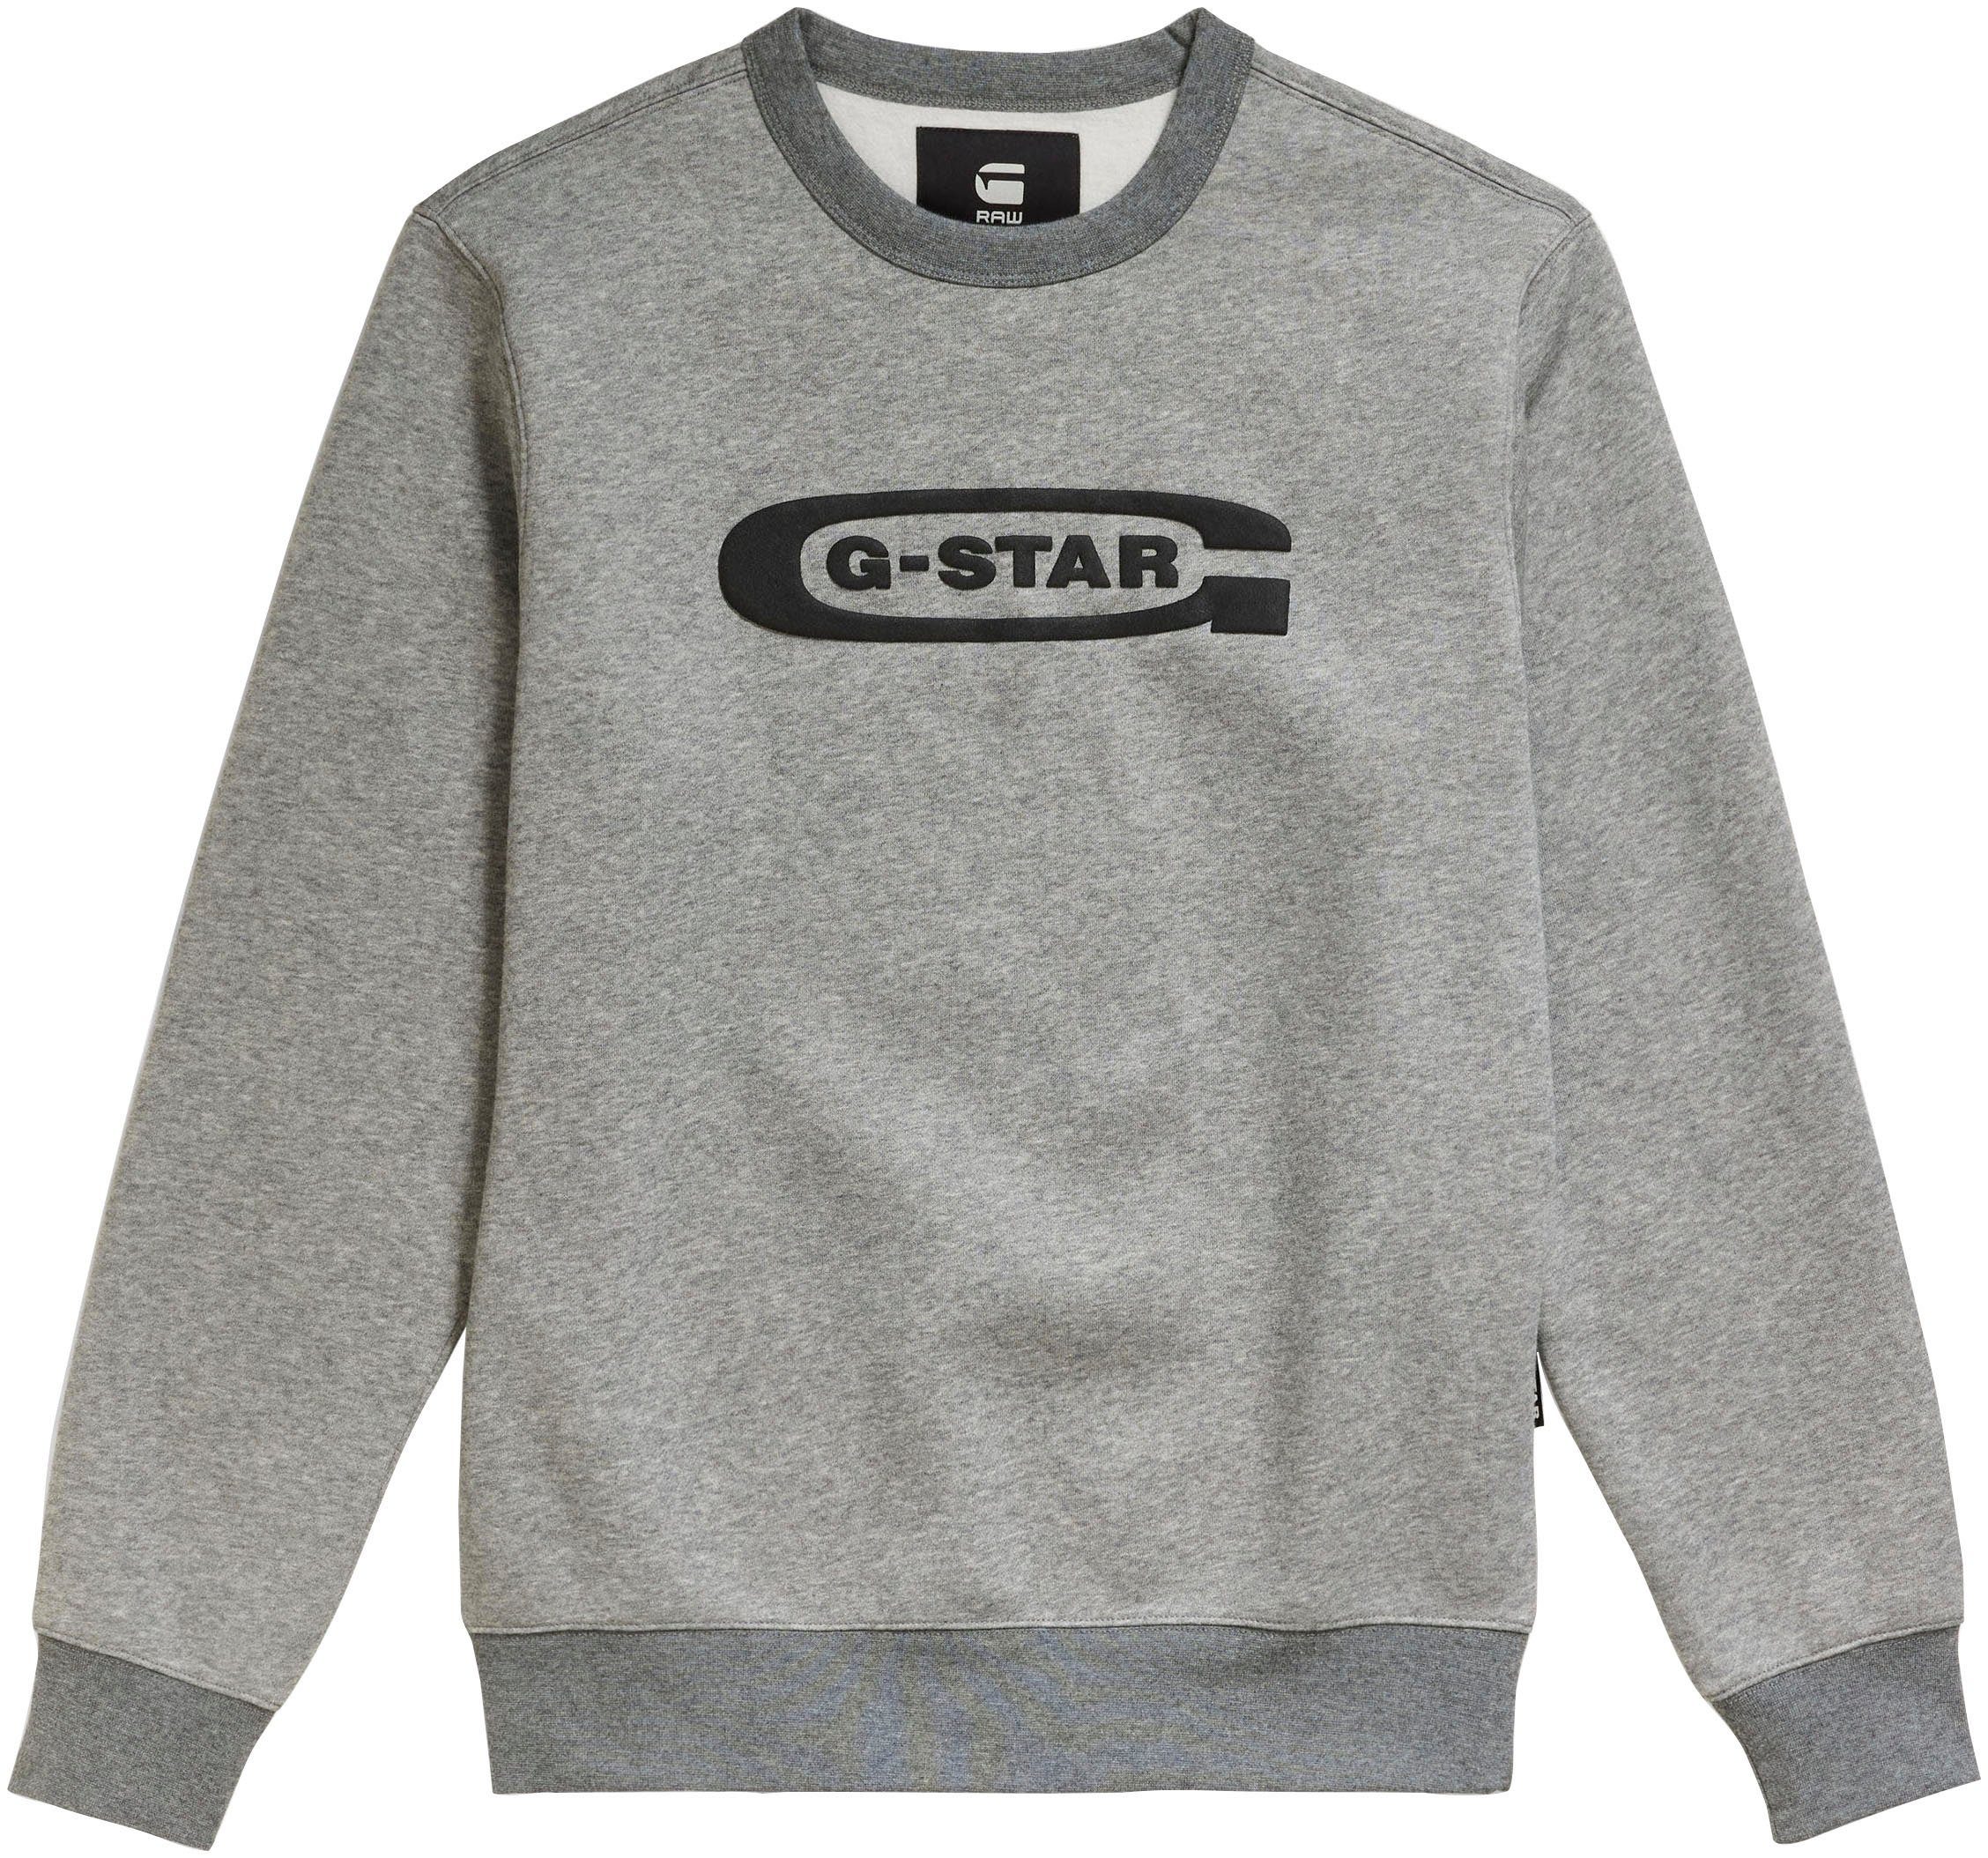 school medium G-Star Old RAW logo htr r Sweatshirt grey sw